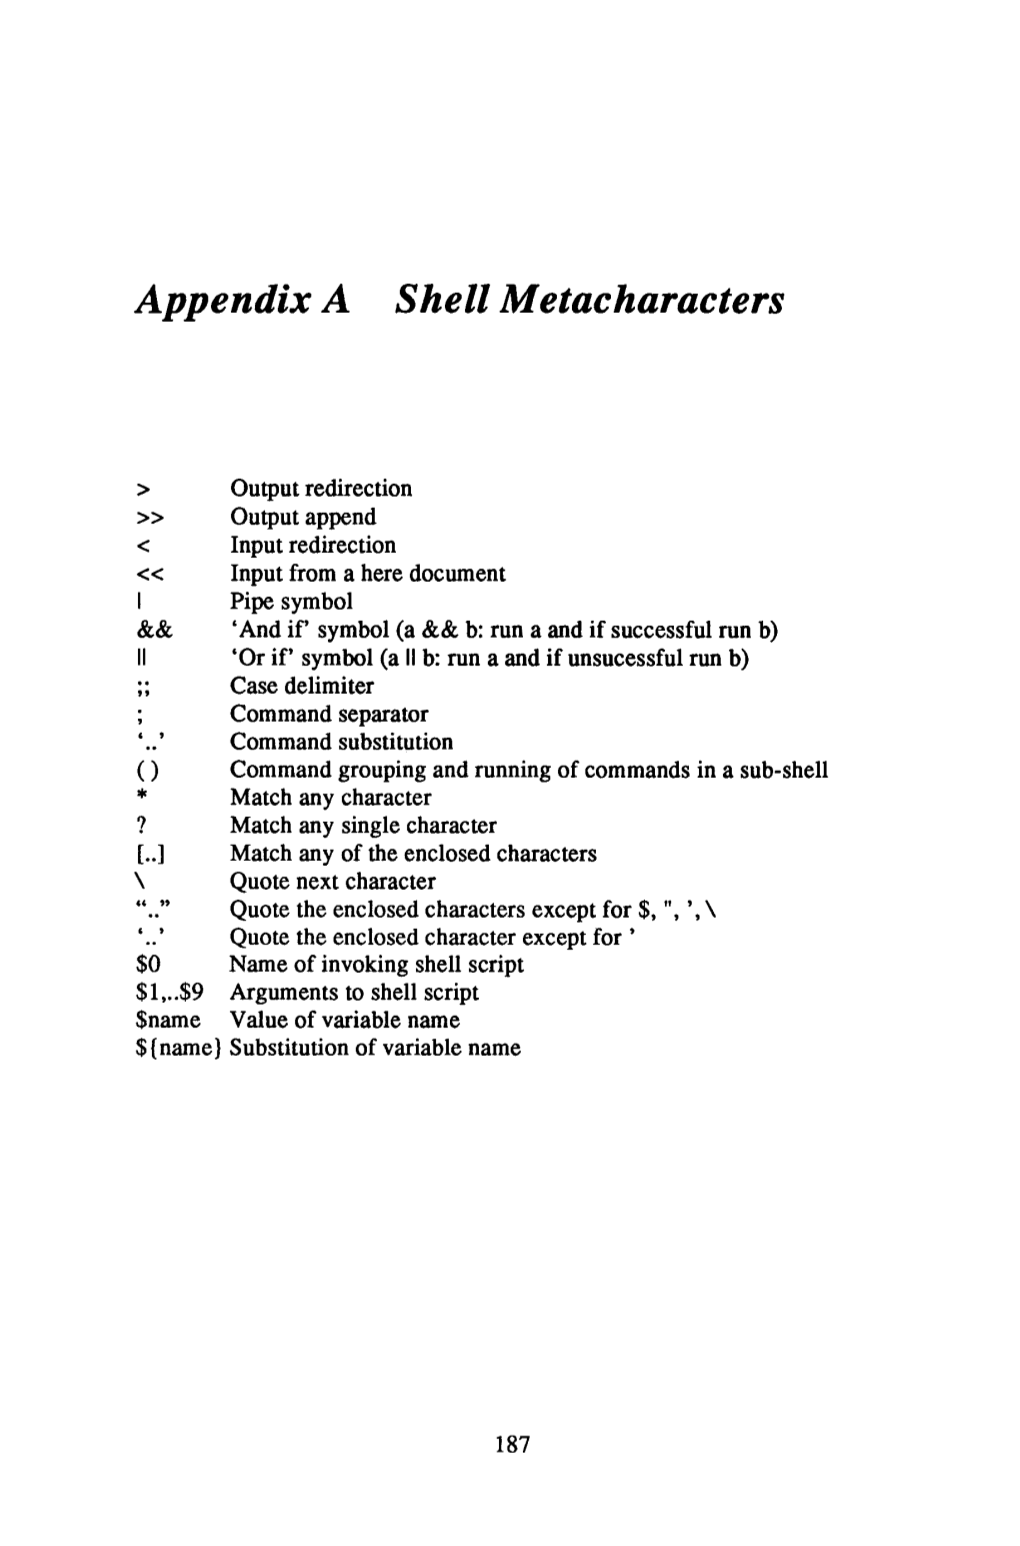 Appendix a Shell Metacharacters